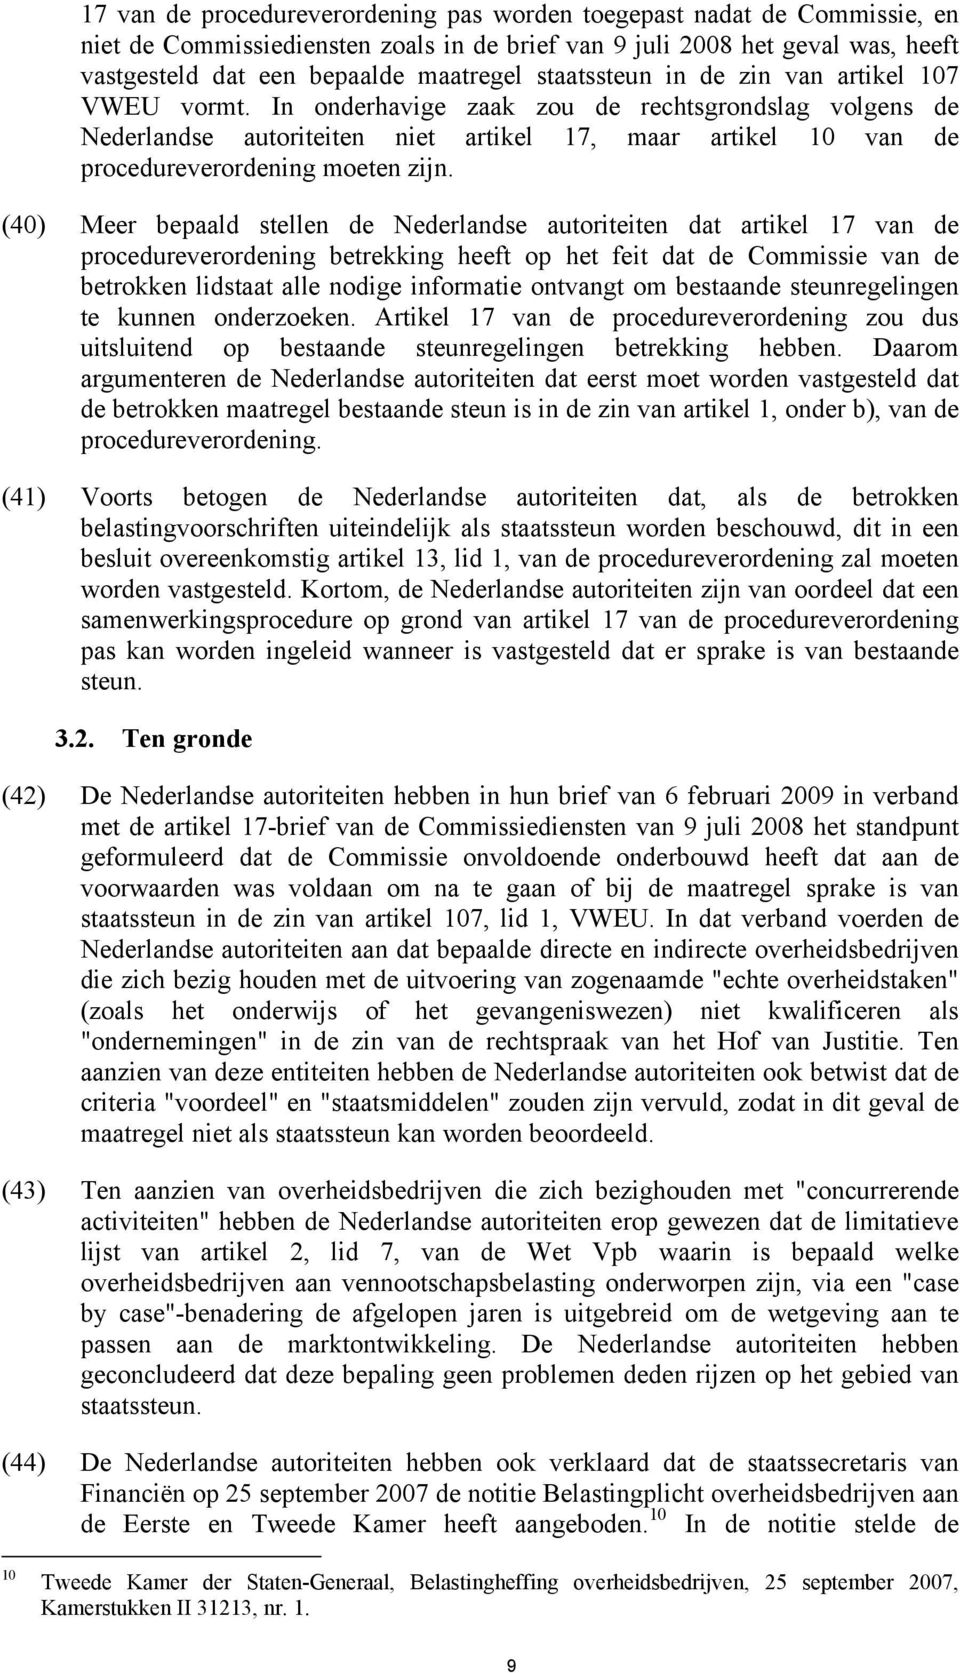 In onderhavige zaak zou de rechtsgrondslag volgens de Nederlandse autoriteiten niet artikel 17, maar artikel 10 van de procedureverordening moeten zijn.